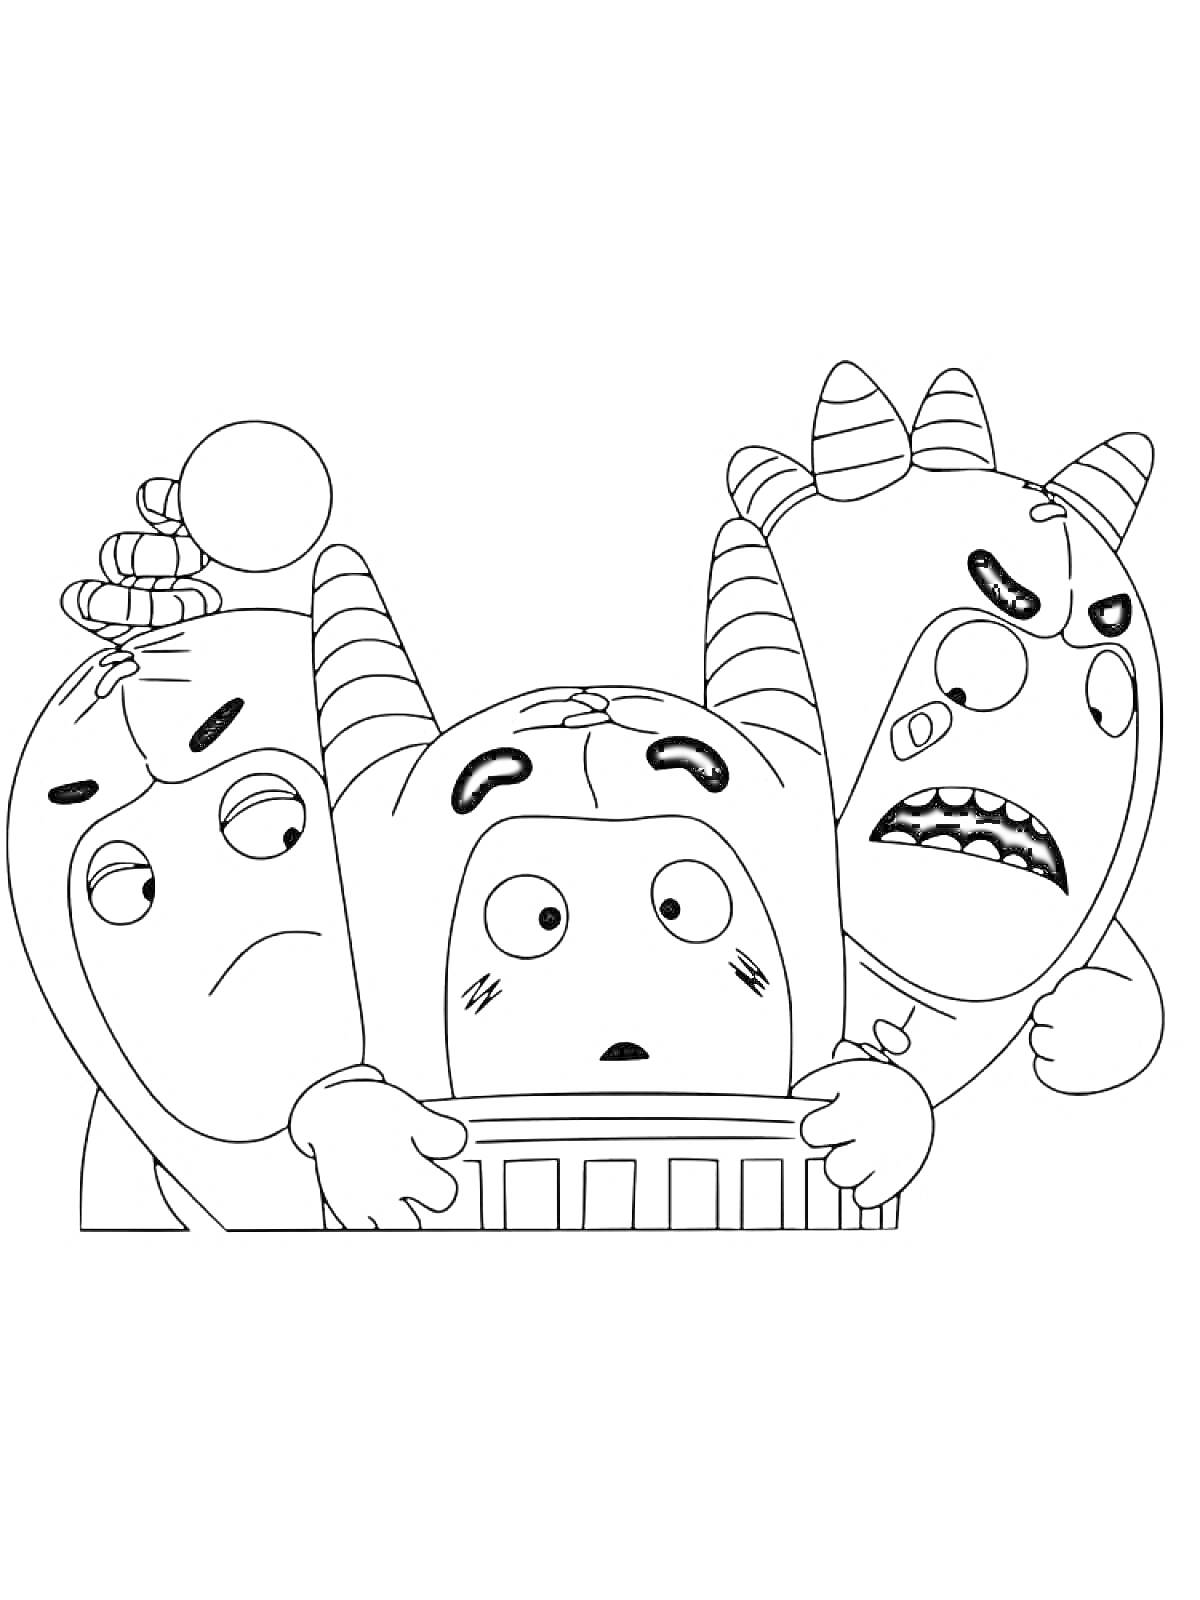 Три чудика с рогами и усиками, один в центре с испуганным лицом, двое по бокам выглядят обеспокоенно и сердито